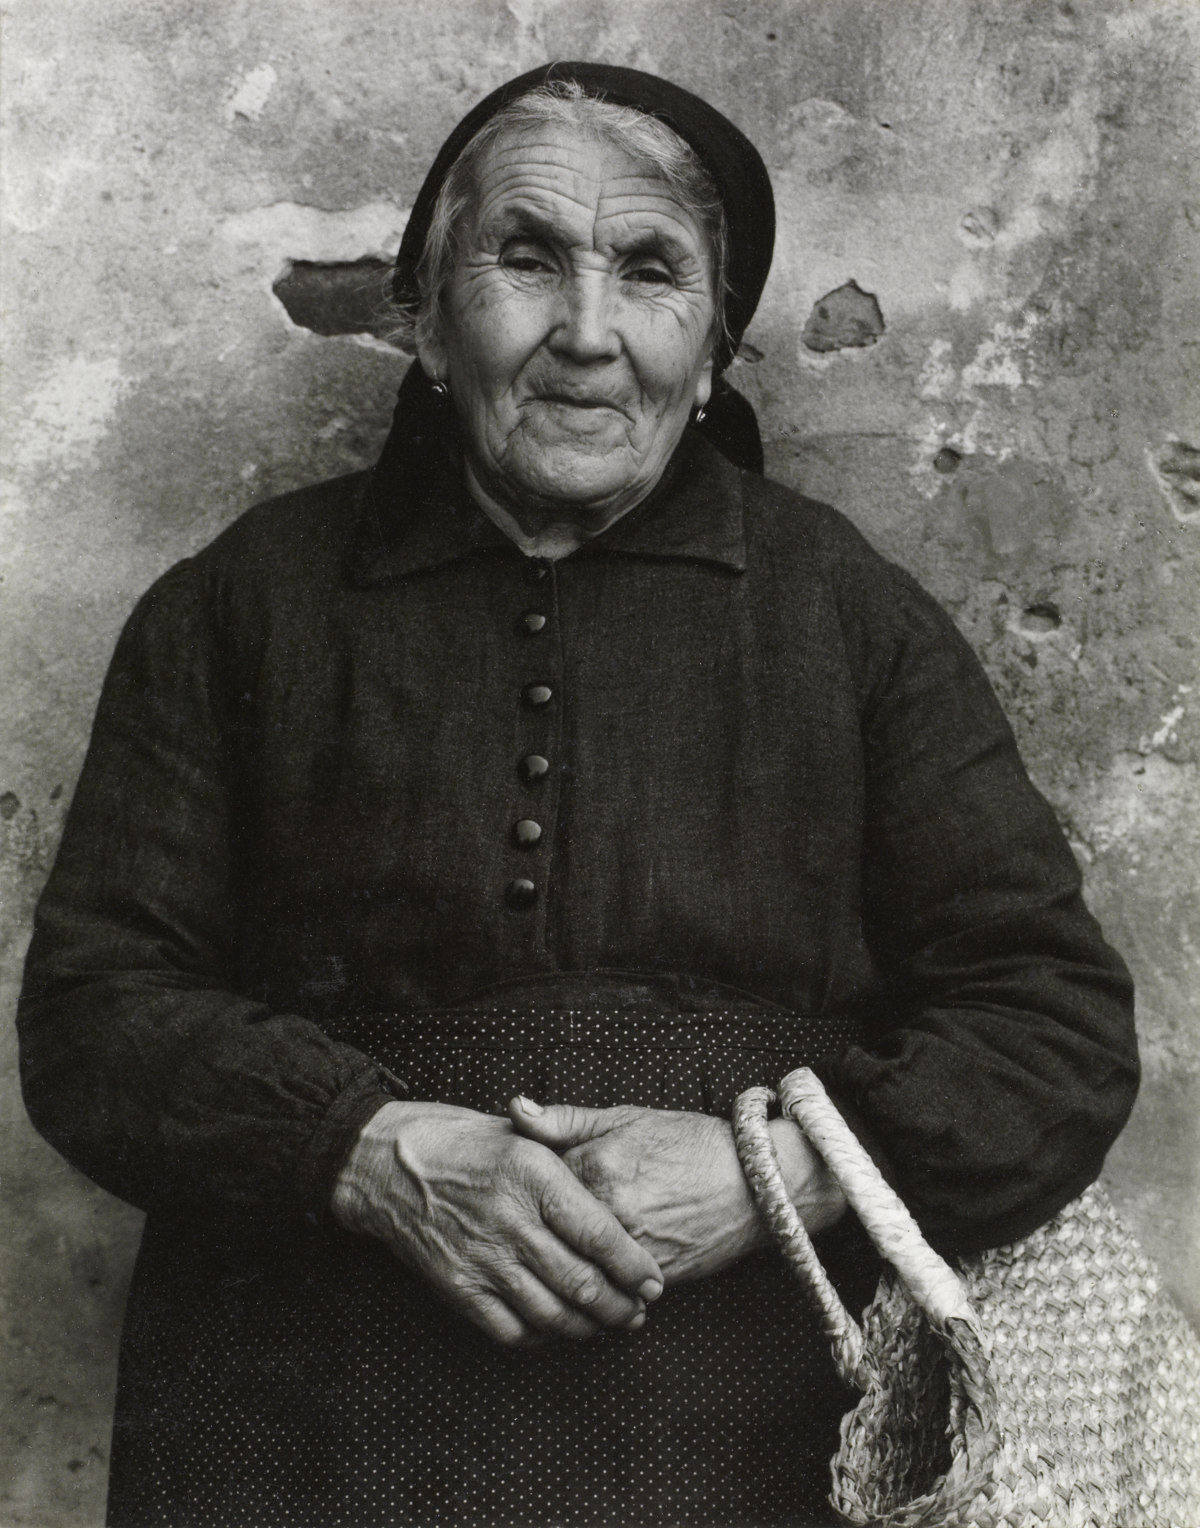 Portrait, Luzzara [Retrato, Luzzara, Italia] © Aperture Foundation, Inc., Paul Strand Archive © COLECCIONES Fundación MAPFRE